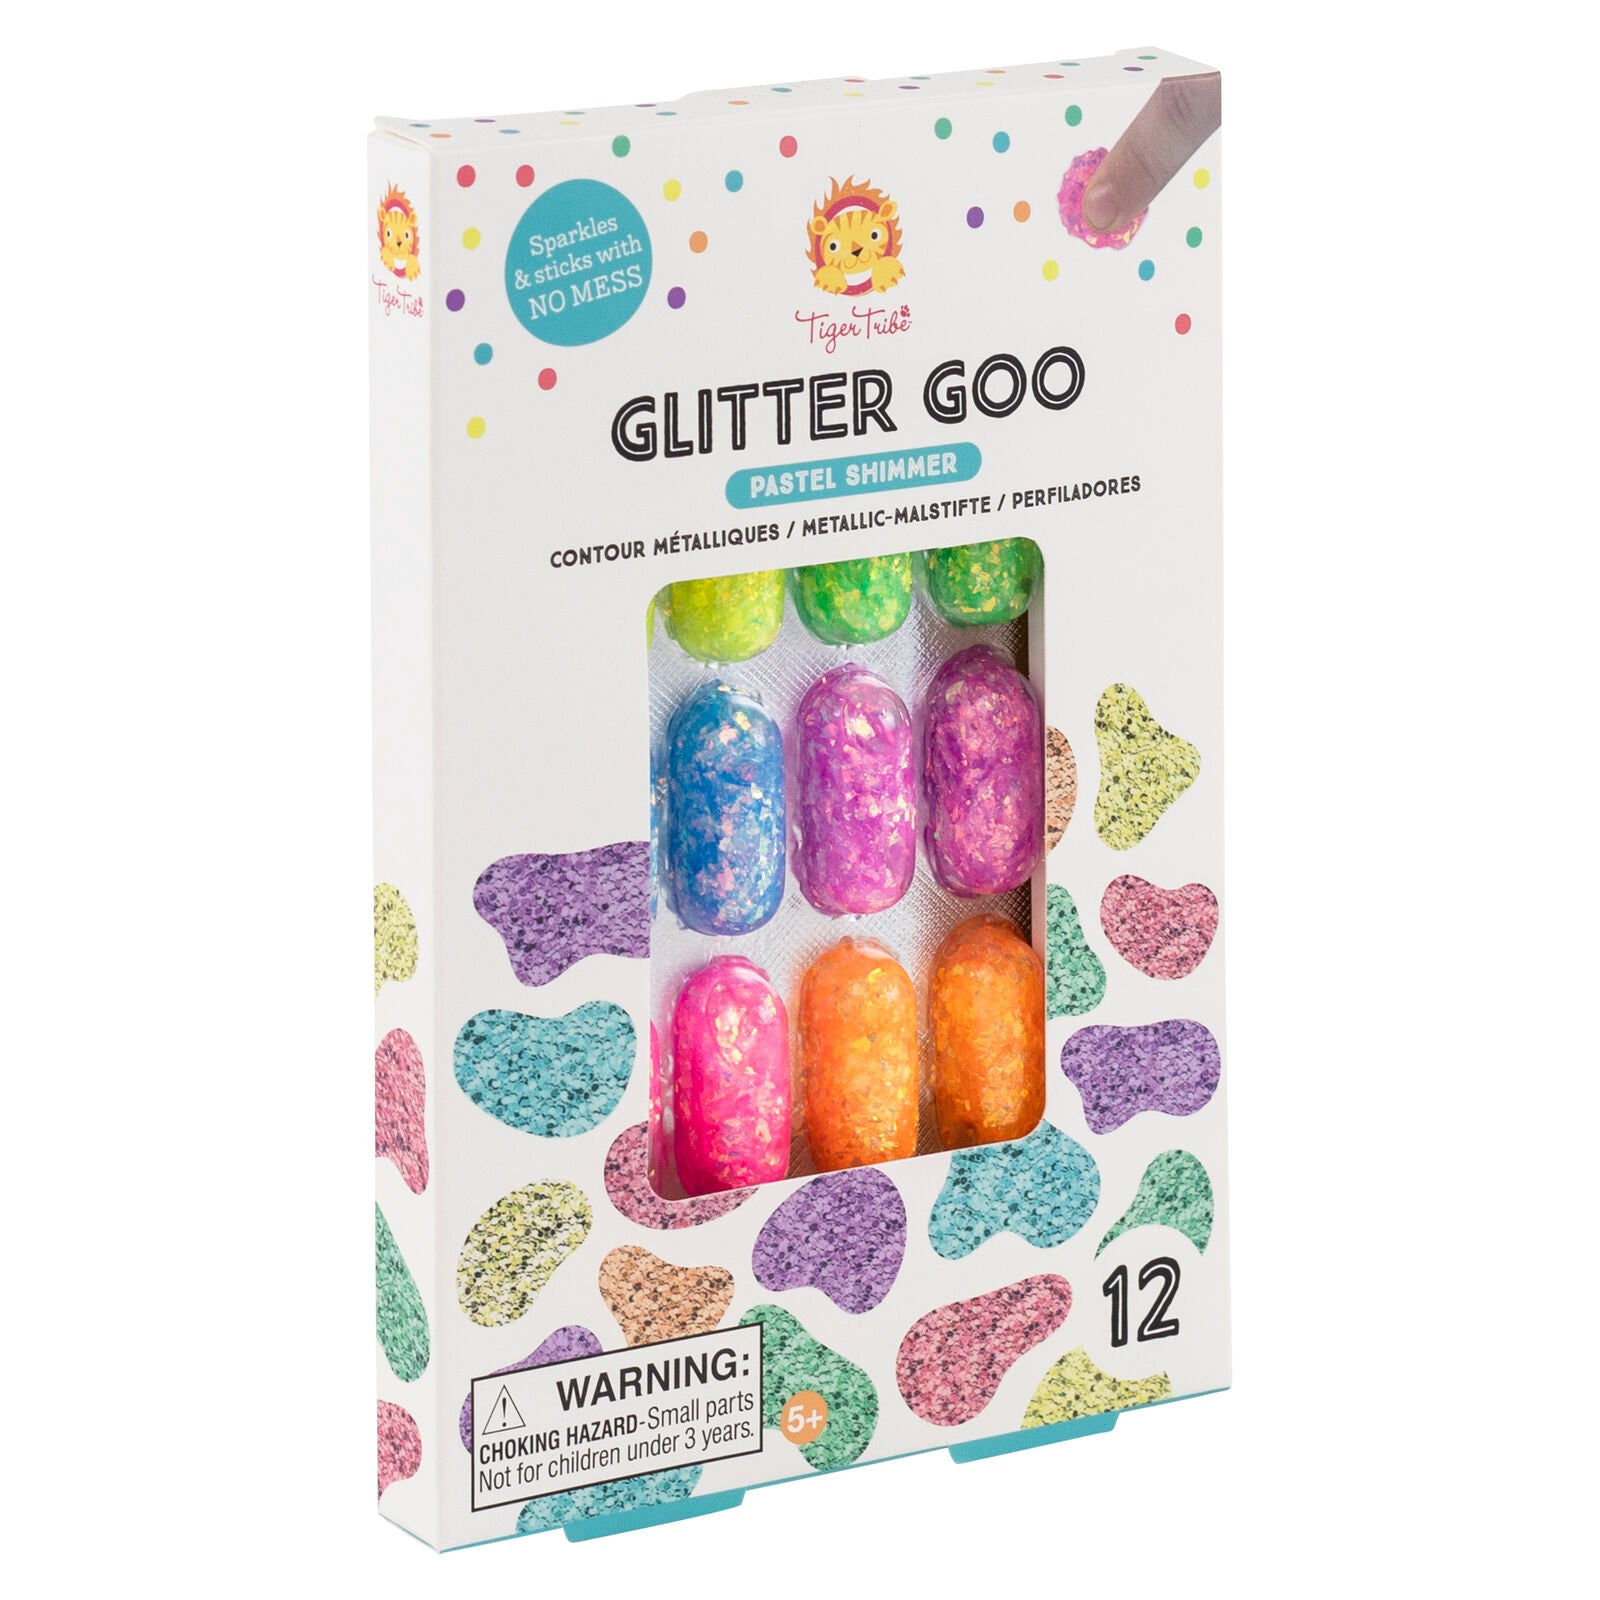 Tiger Tribe Glitter Goo – Pastel Shimmer